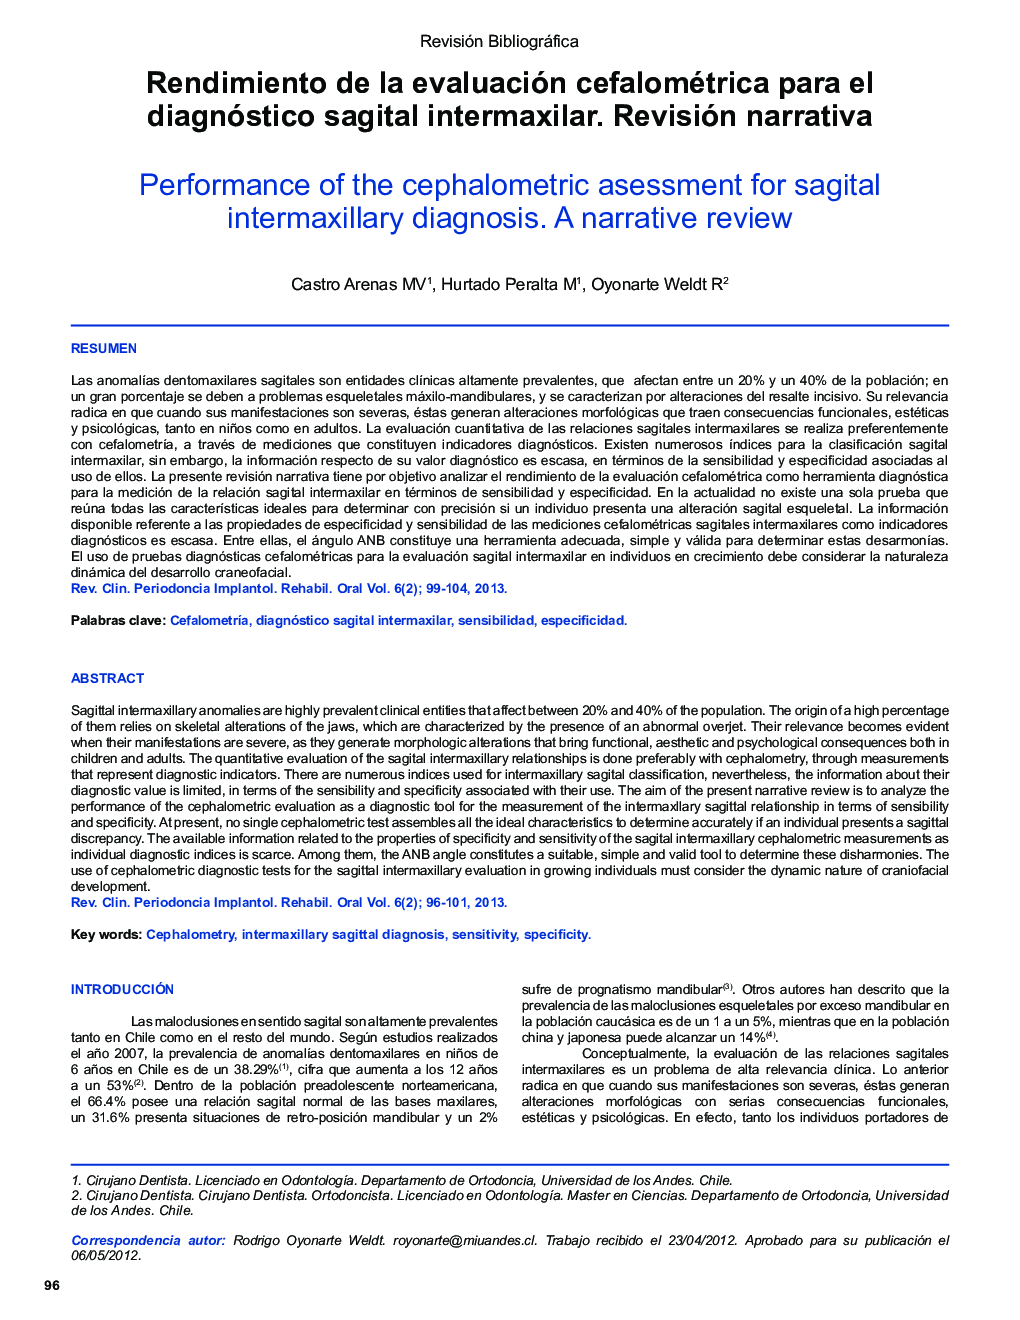 Rendimiento de la evaluación cefalométrica para el diagnóstico sagital intermaxilar. Revisión narrativa